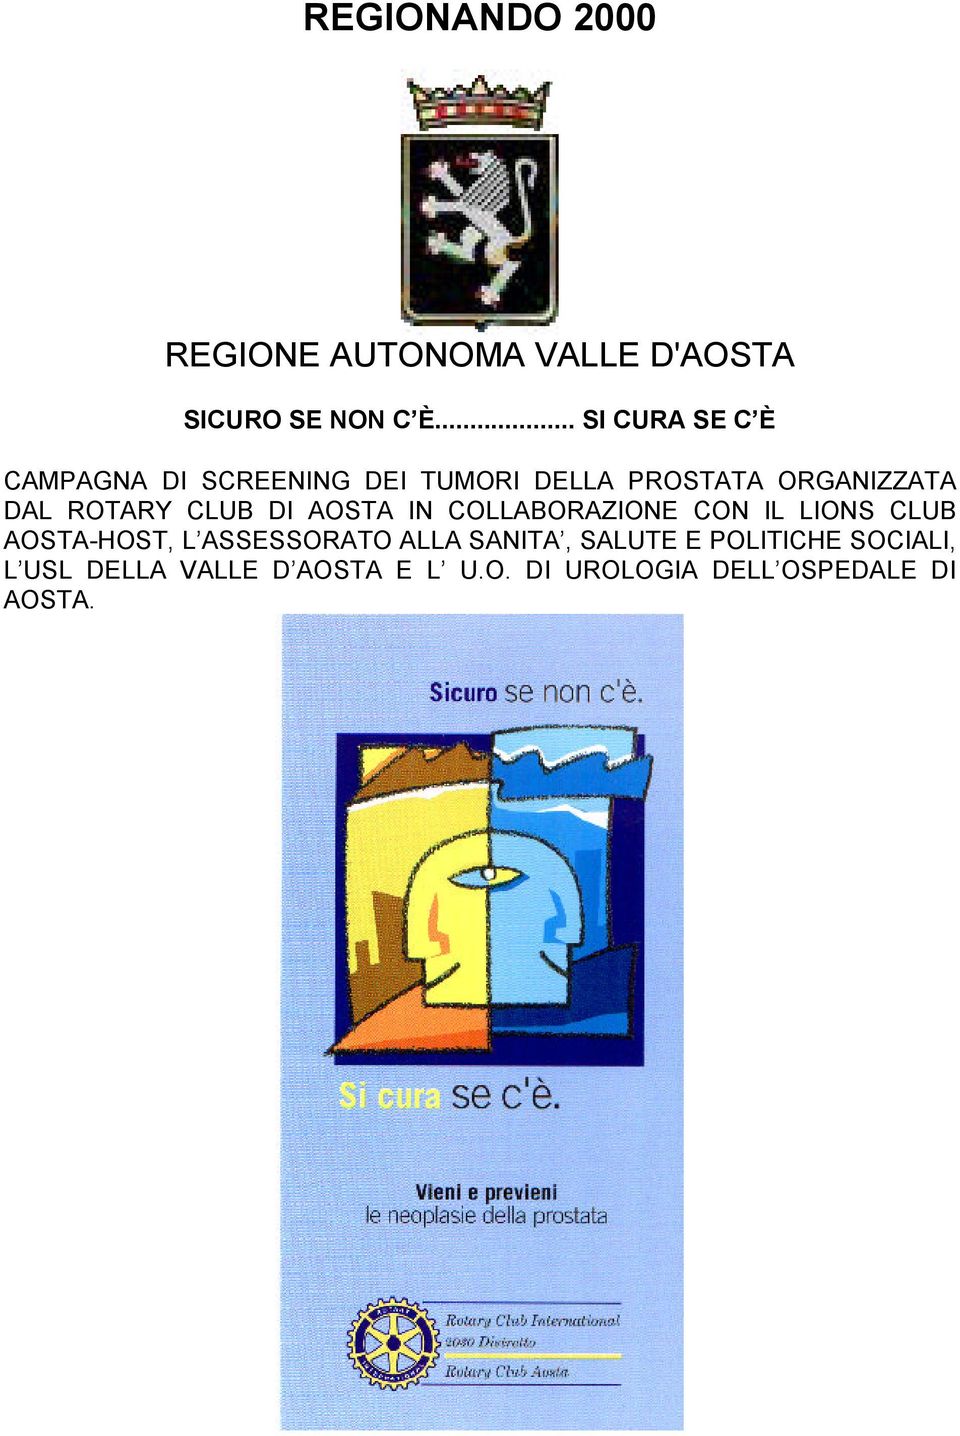 ROTARY CLUB DI AOSTA IN COLLABORAZIONE CON IL LIONS CLUB AOSTA-HOST, L ASSESSORATO